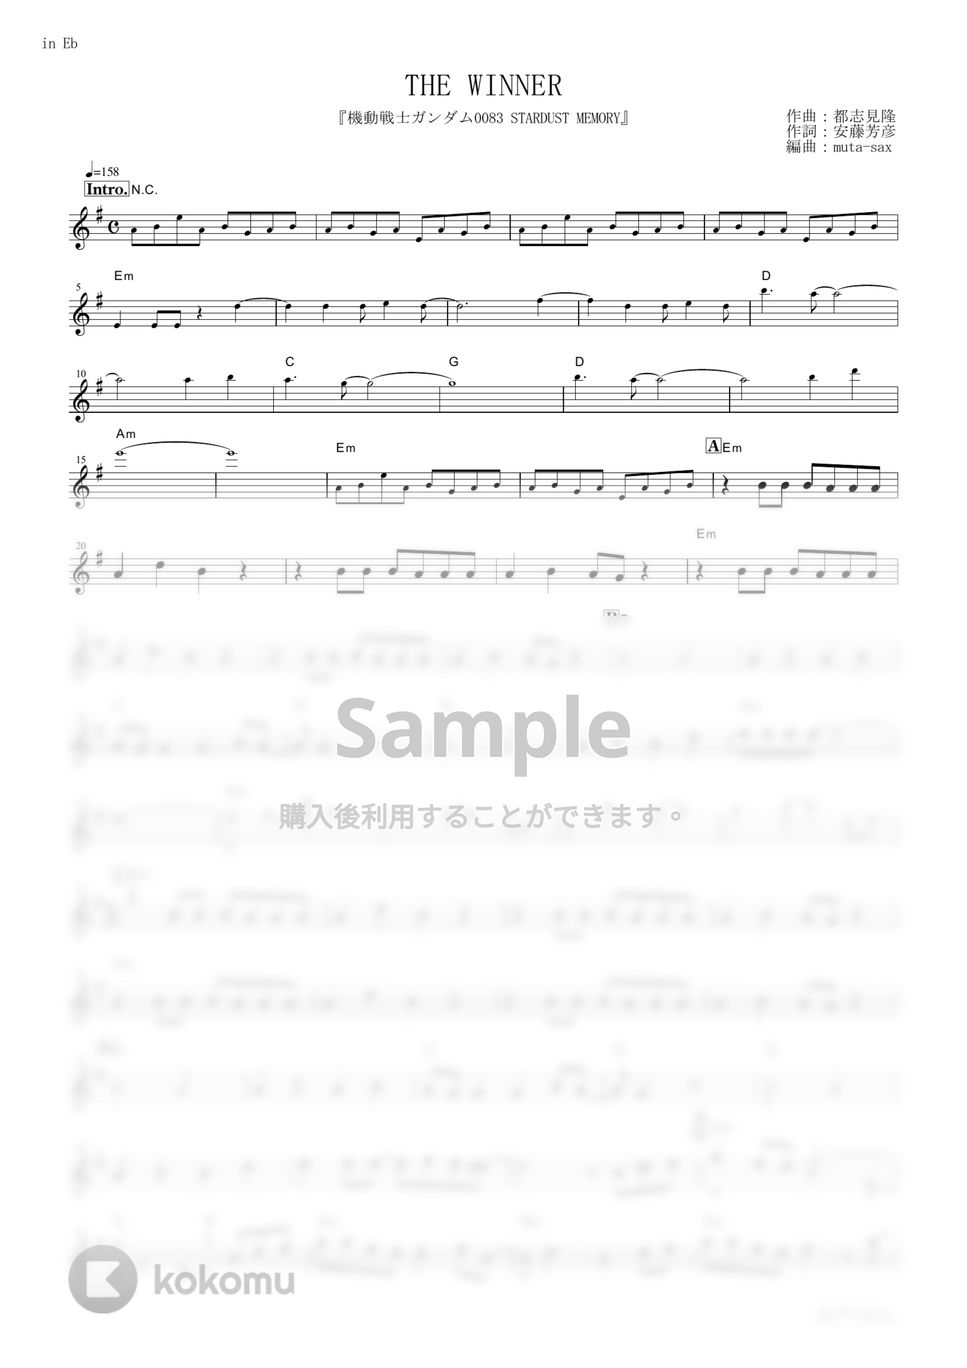 松原みき - THE WINNER (『機動戦士ガンダム0083 STARDUST MEMORY』 / in Eb) by muta-sax